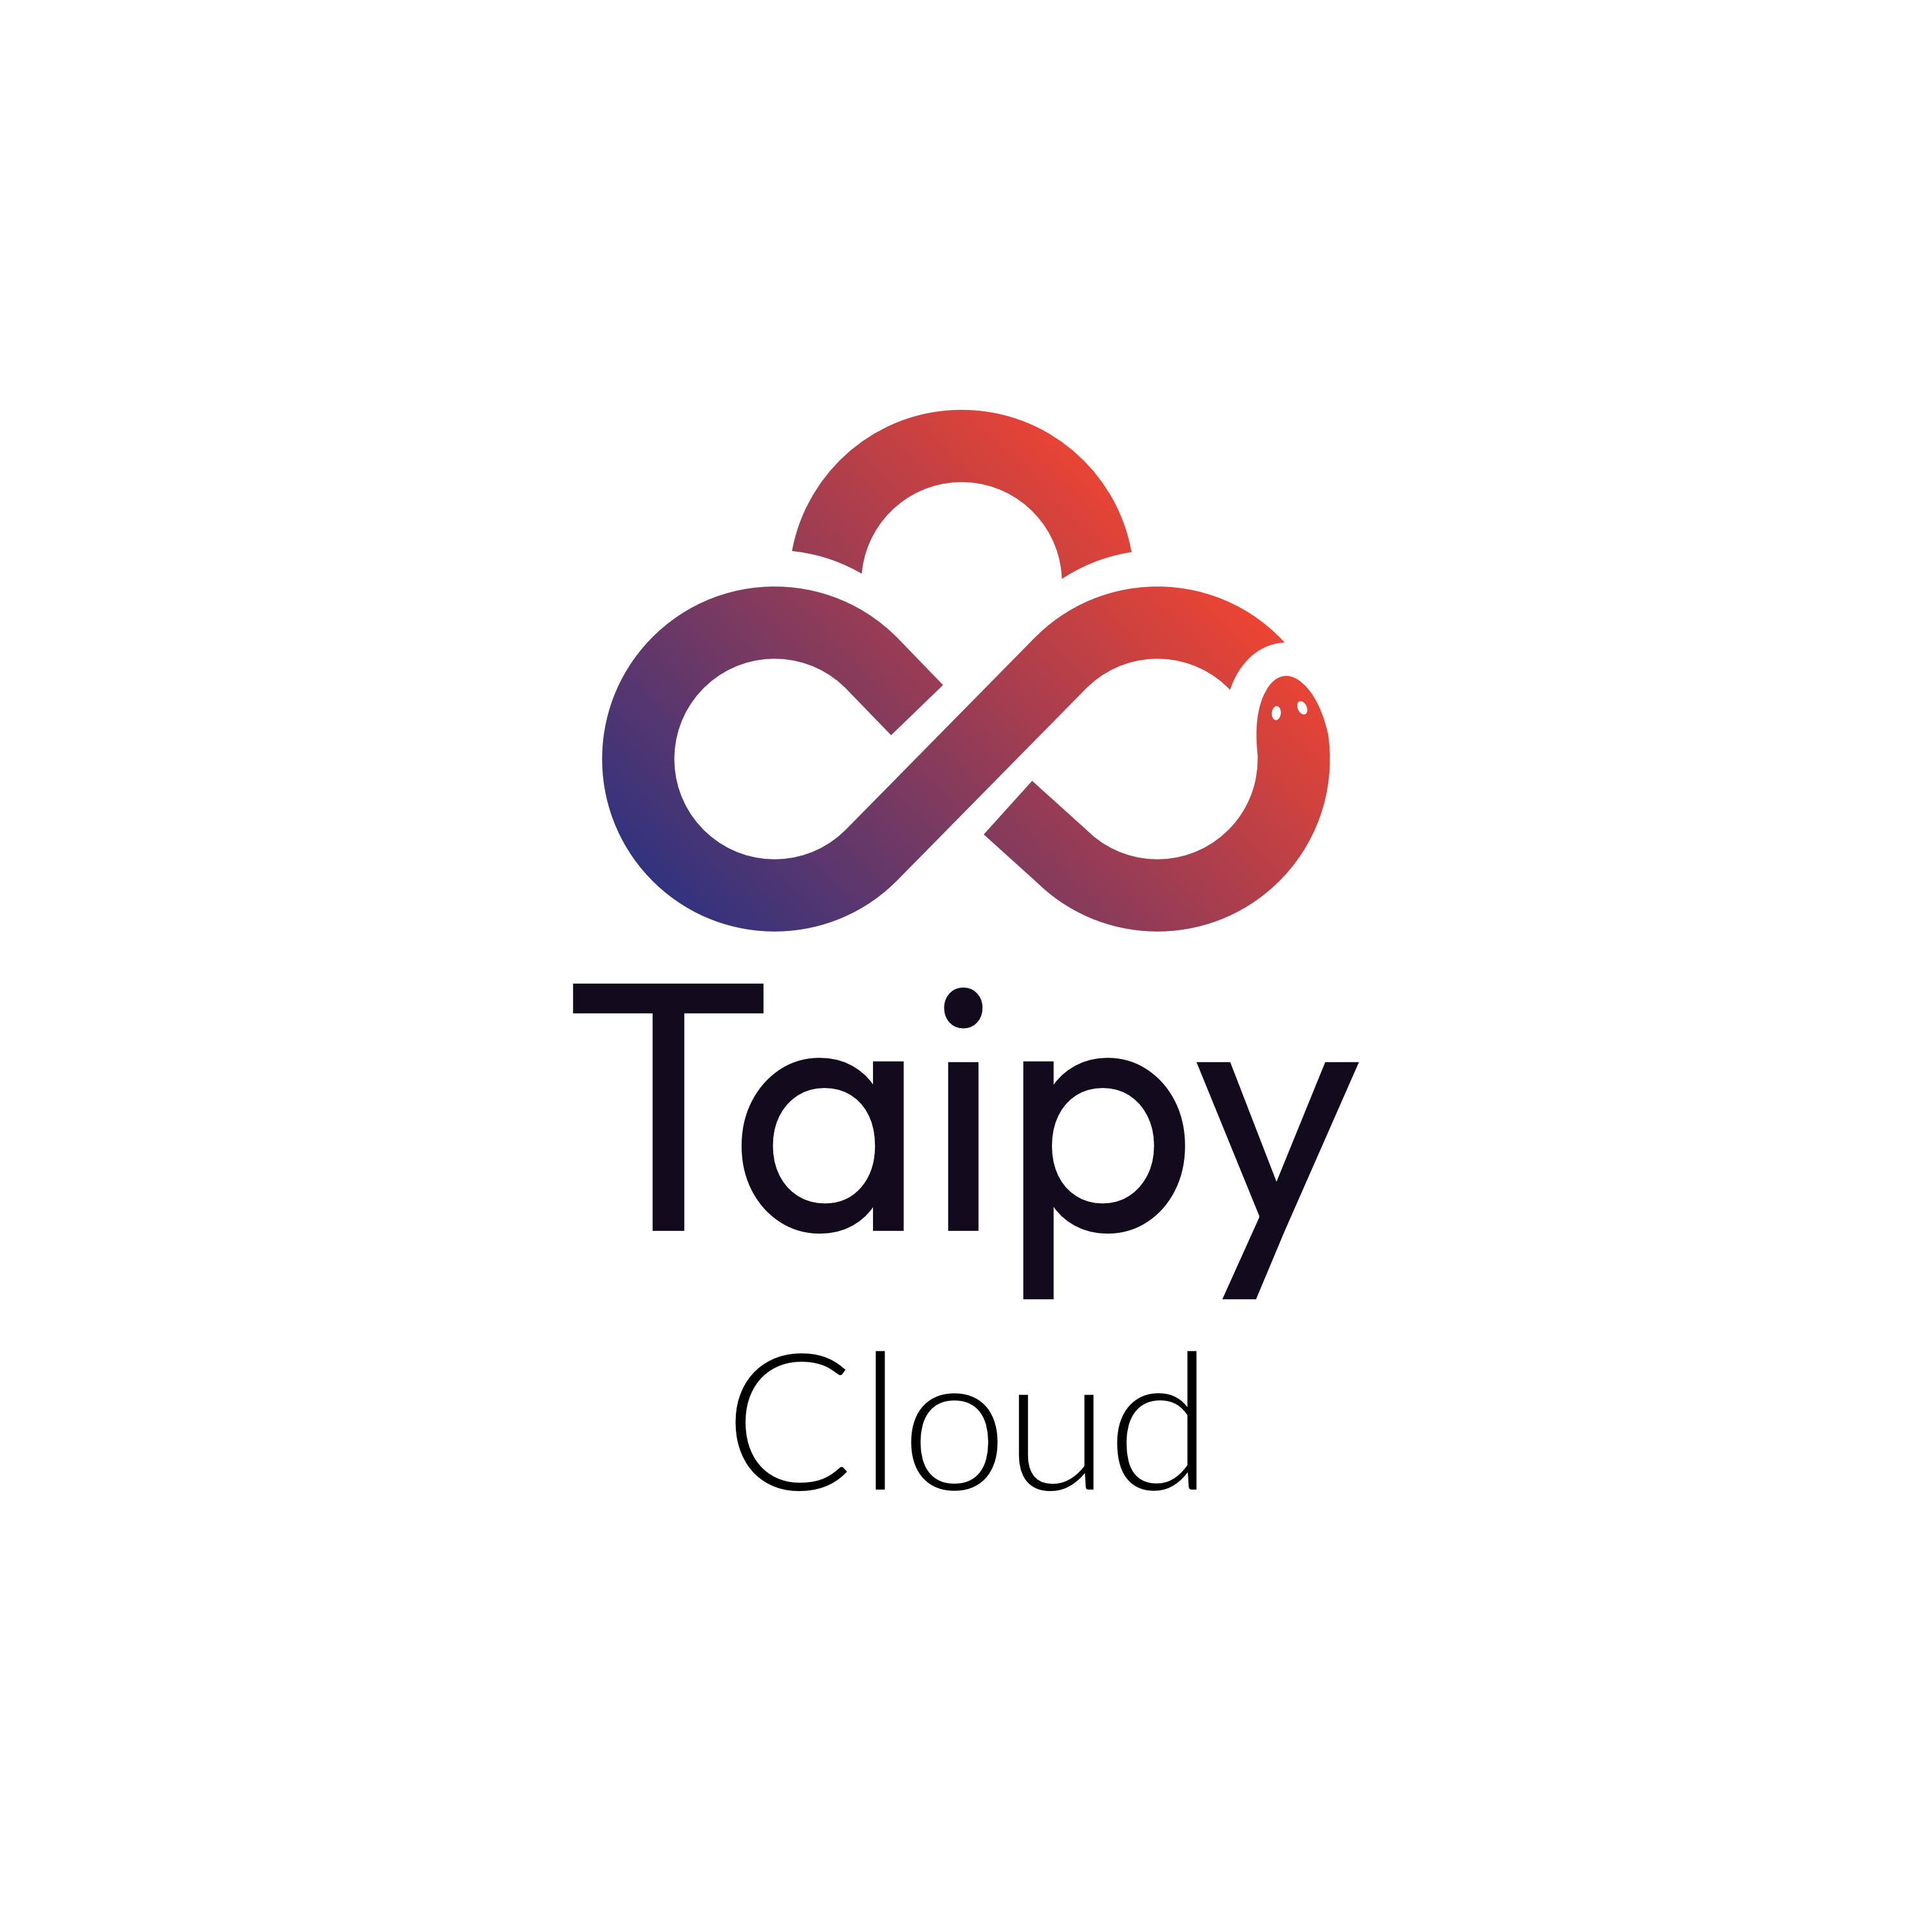 Taipy Cloud logo